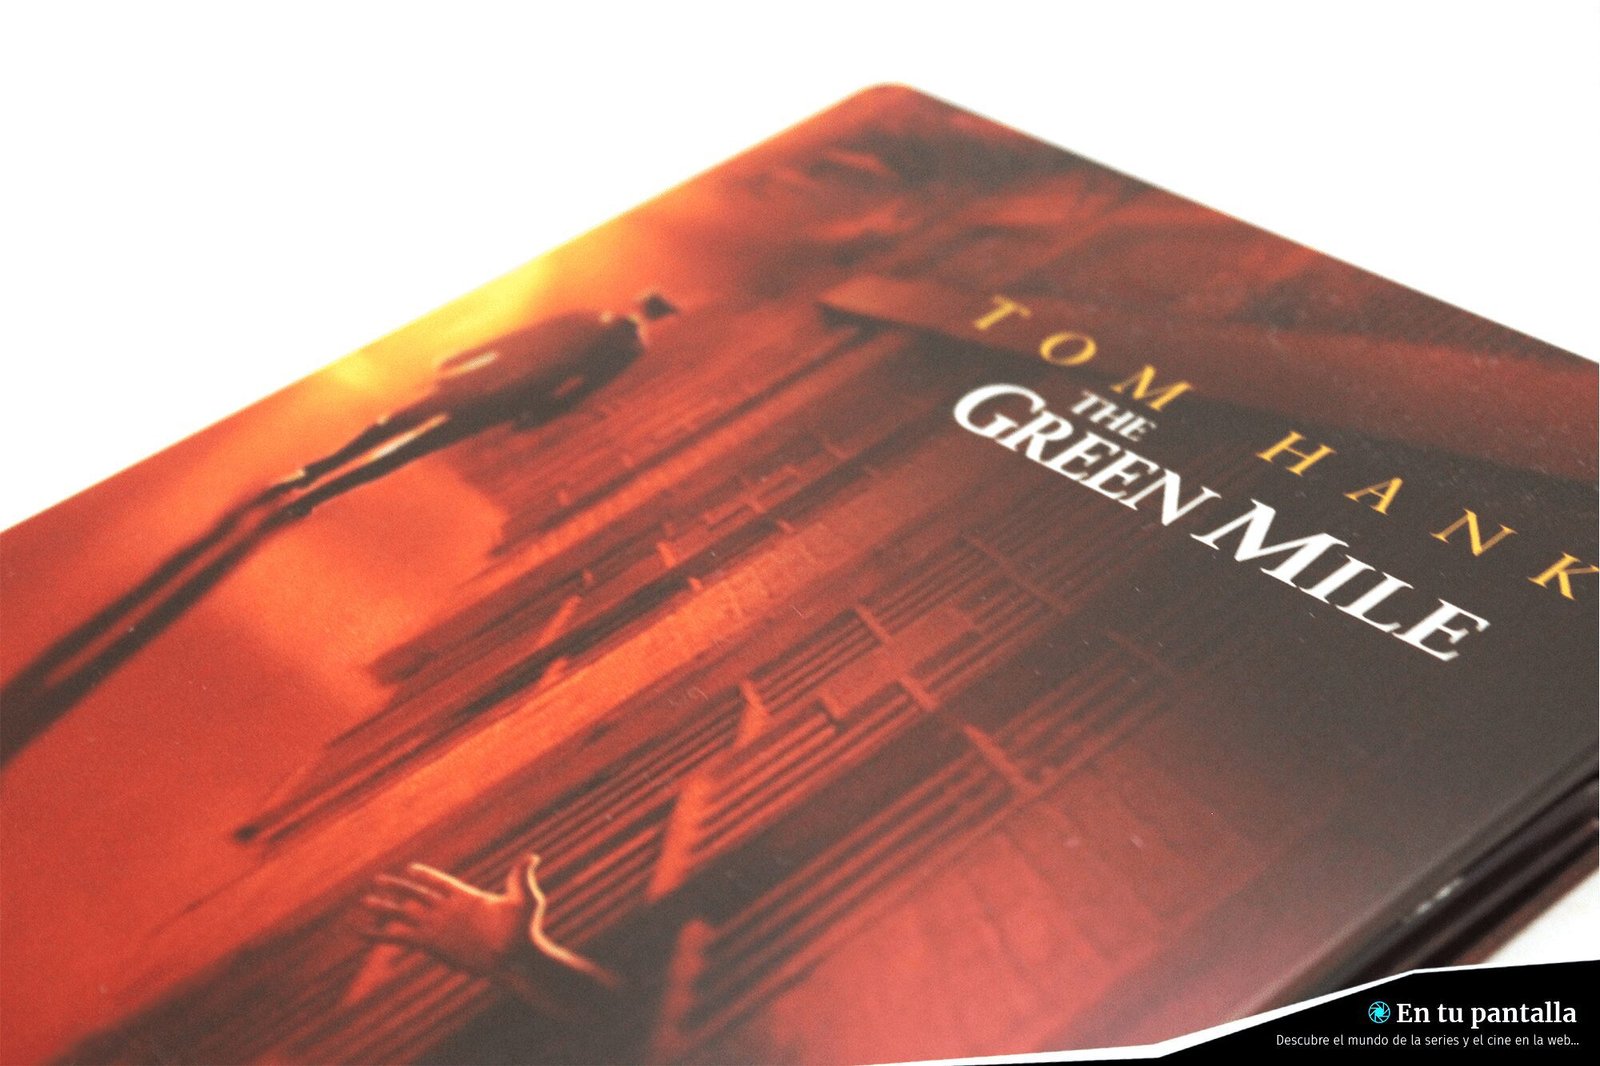 ‘La Milla Verde’: Un vistazo a la edición steelbook 4K Ultra HD • En tu pantalla